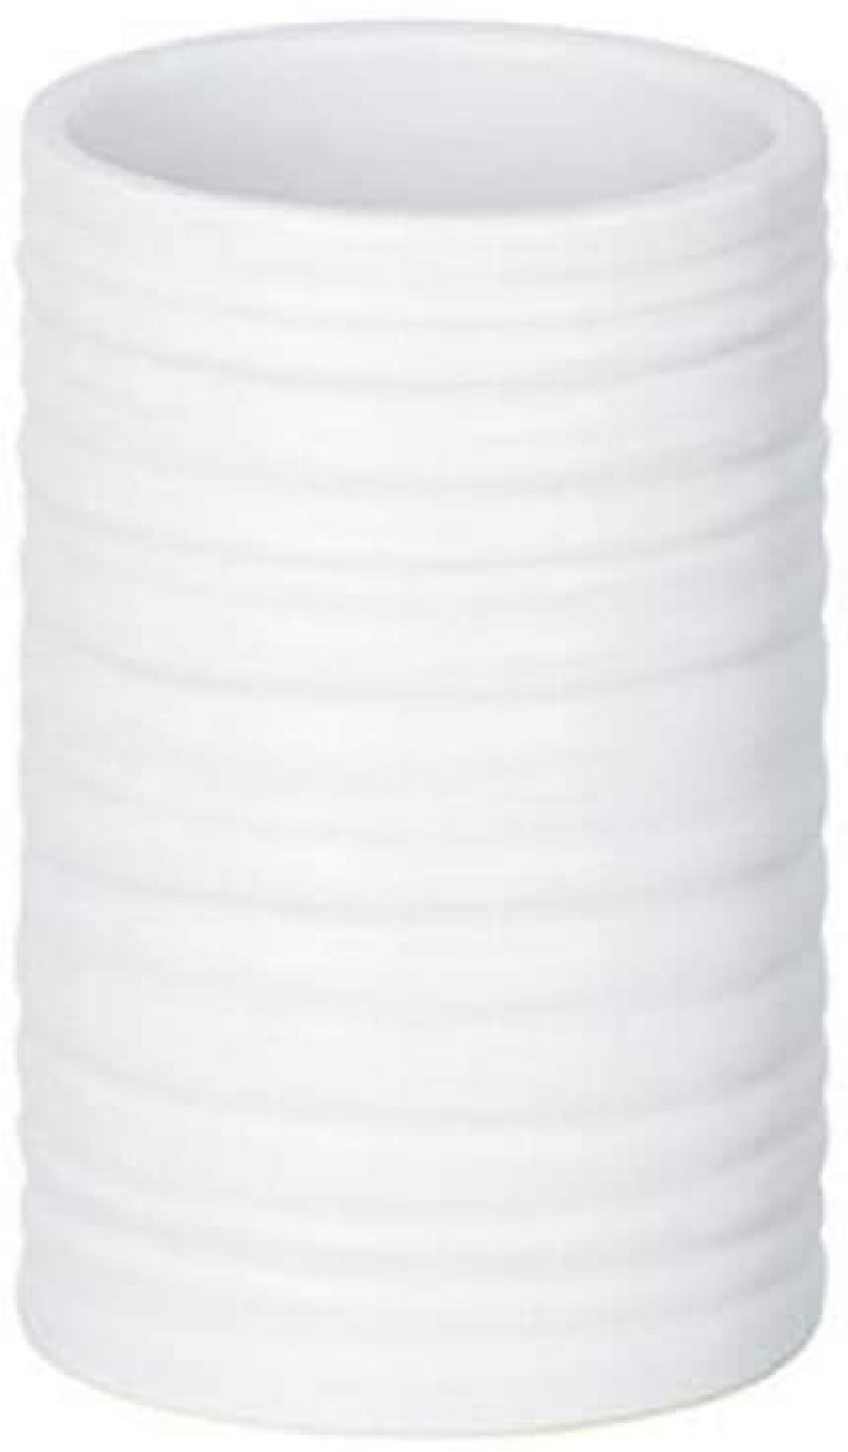 Zahnputzbecher Mila Weiß Keramik - Zahnbürstenhalter für Zahnbürste und Zahnpasta, Keramik, 6.5 x 10.5 x 6.5 cm, Weiß